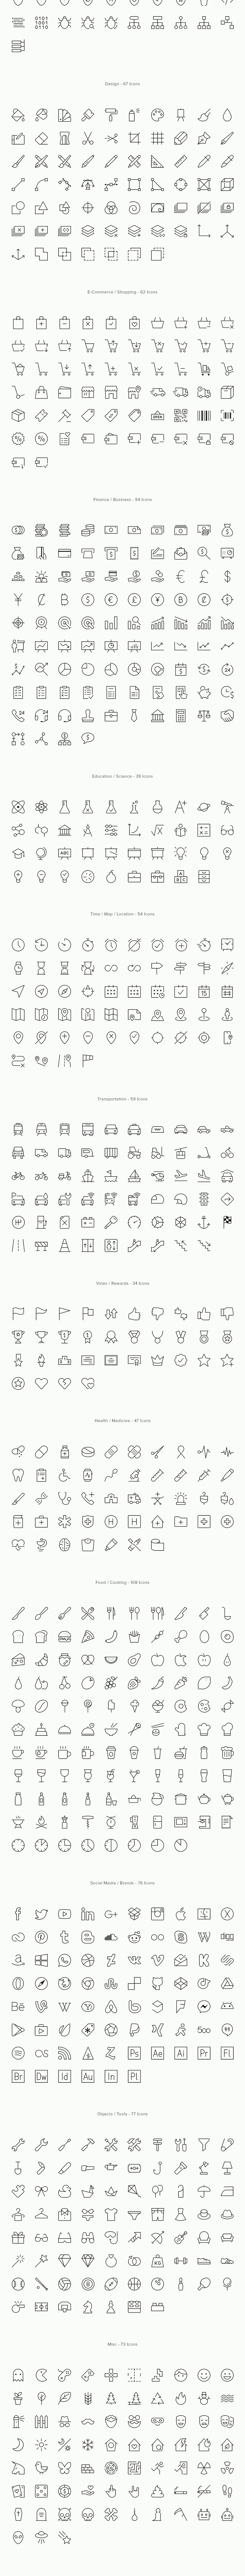 一套优质简约的线稿图标 Simple Line Icons